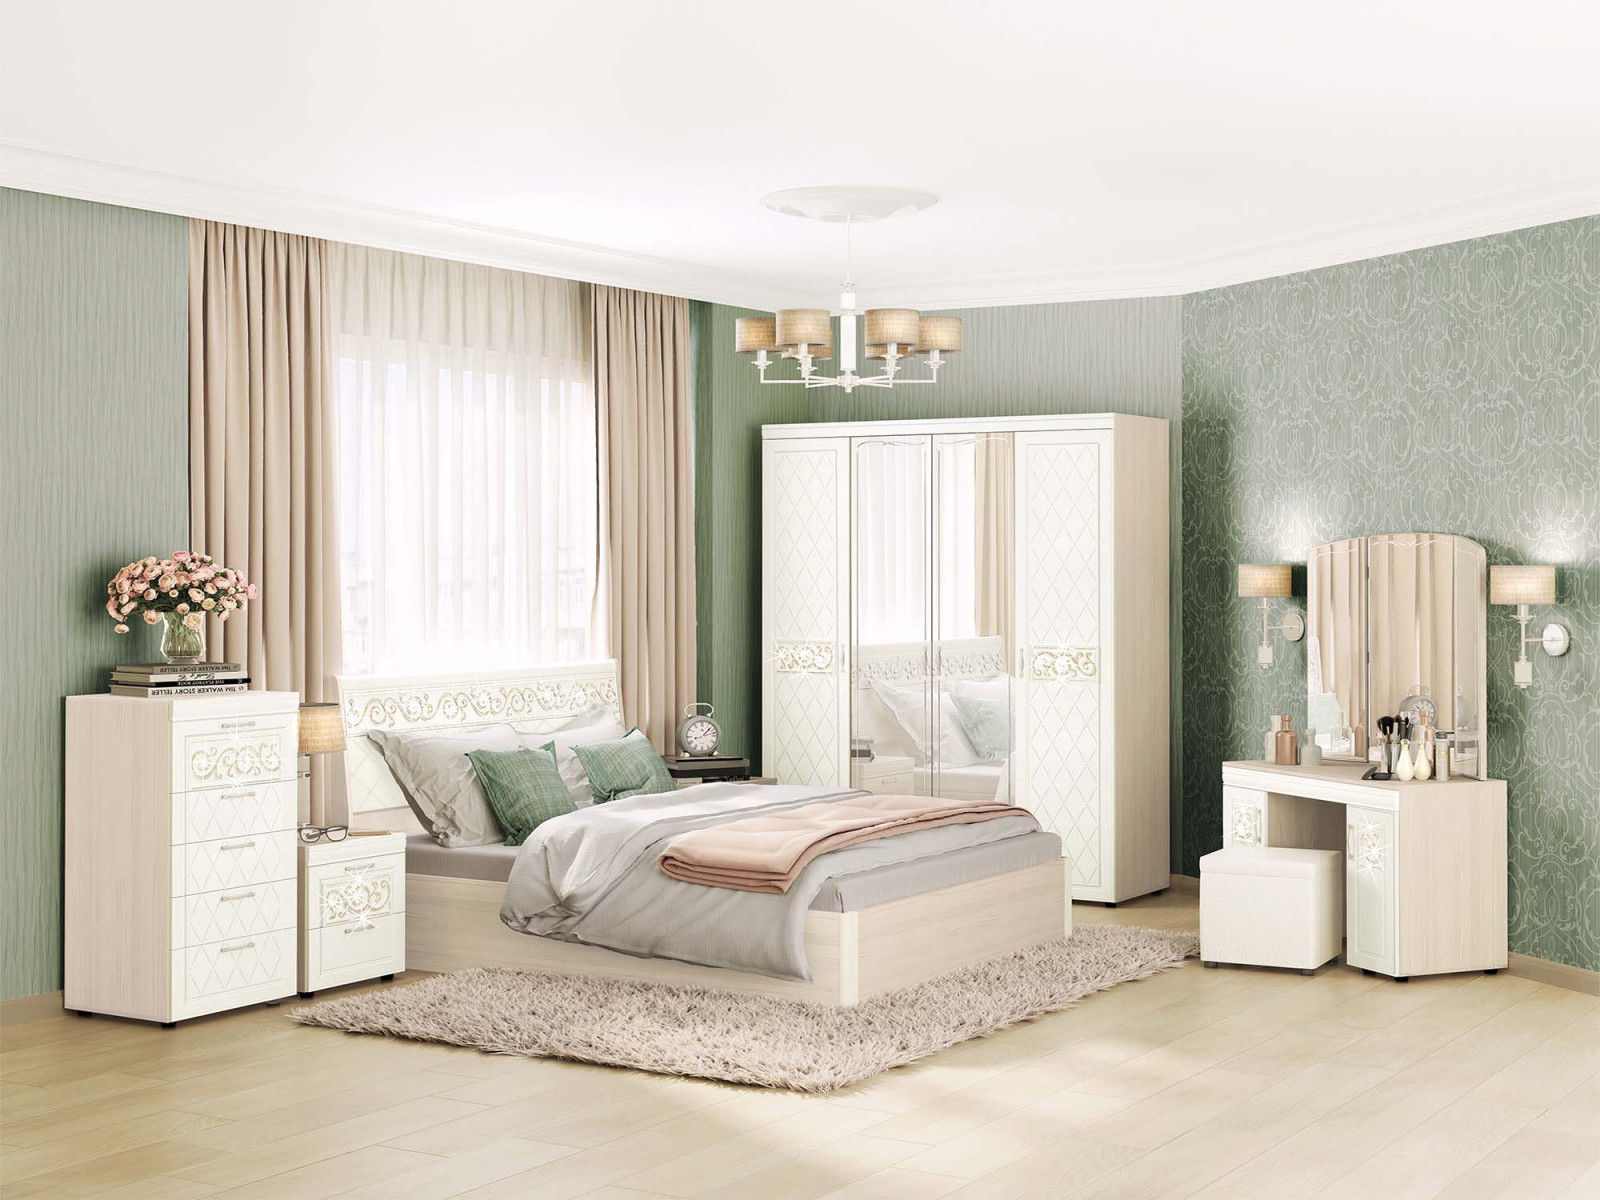 Модульная спальня «Тиффани» купить недорого в Екатеринбурге, фото, отзывы